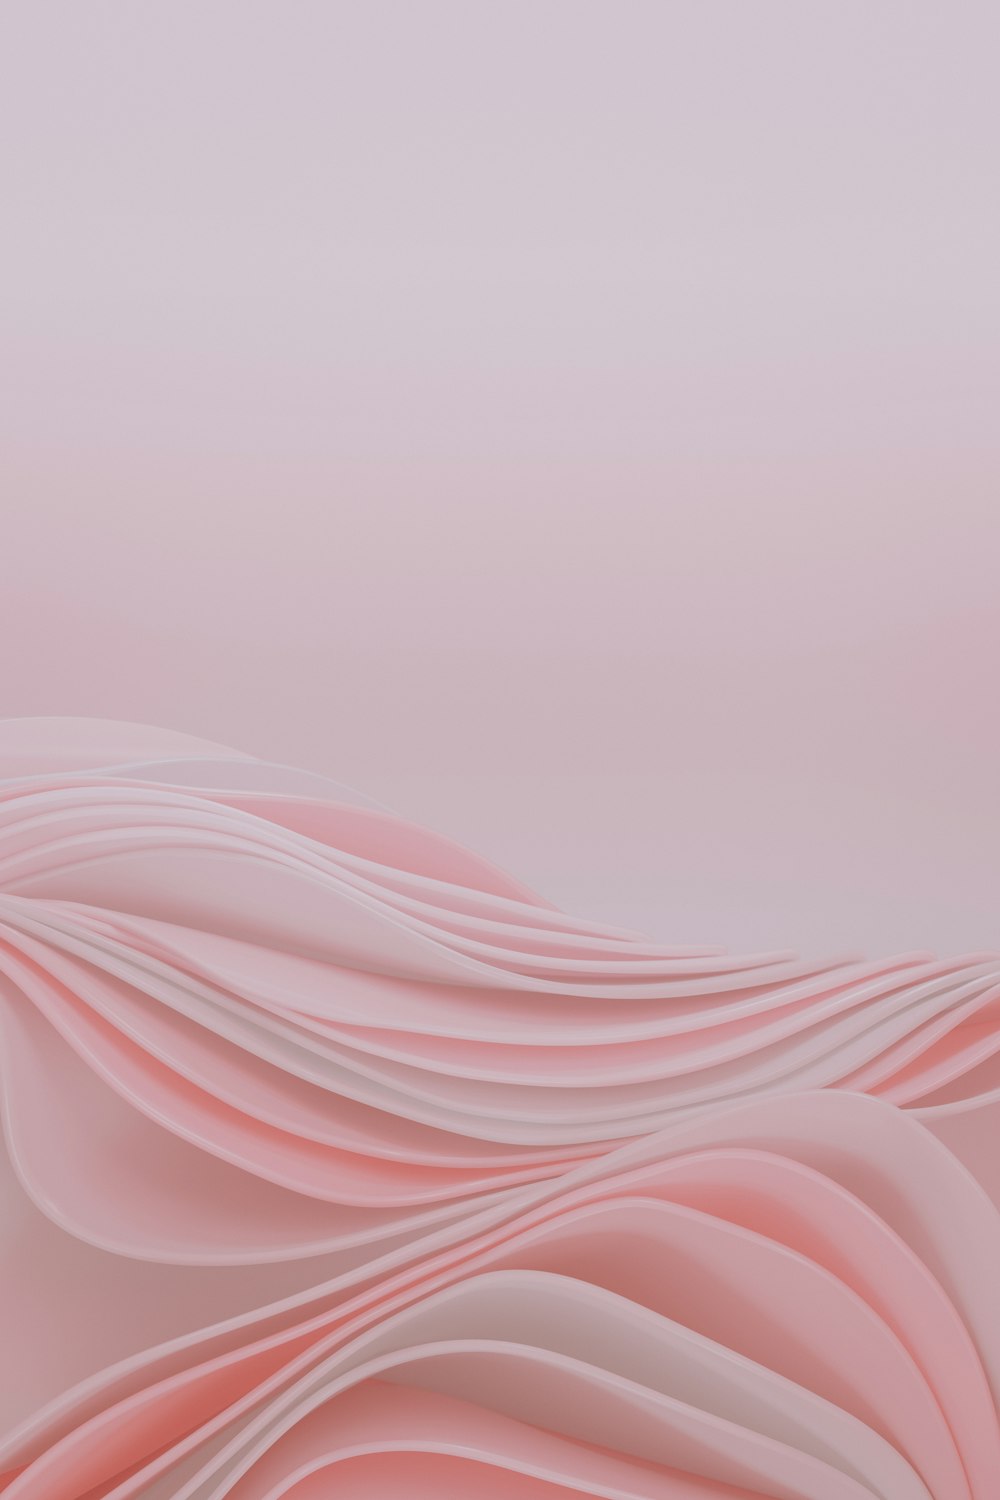 un fondo rosa abstracto con líneas onduladas